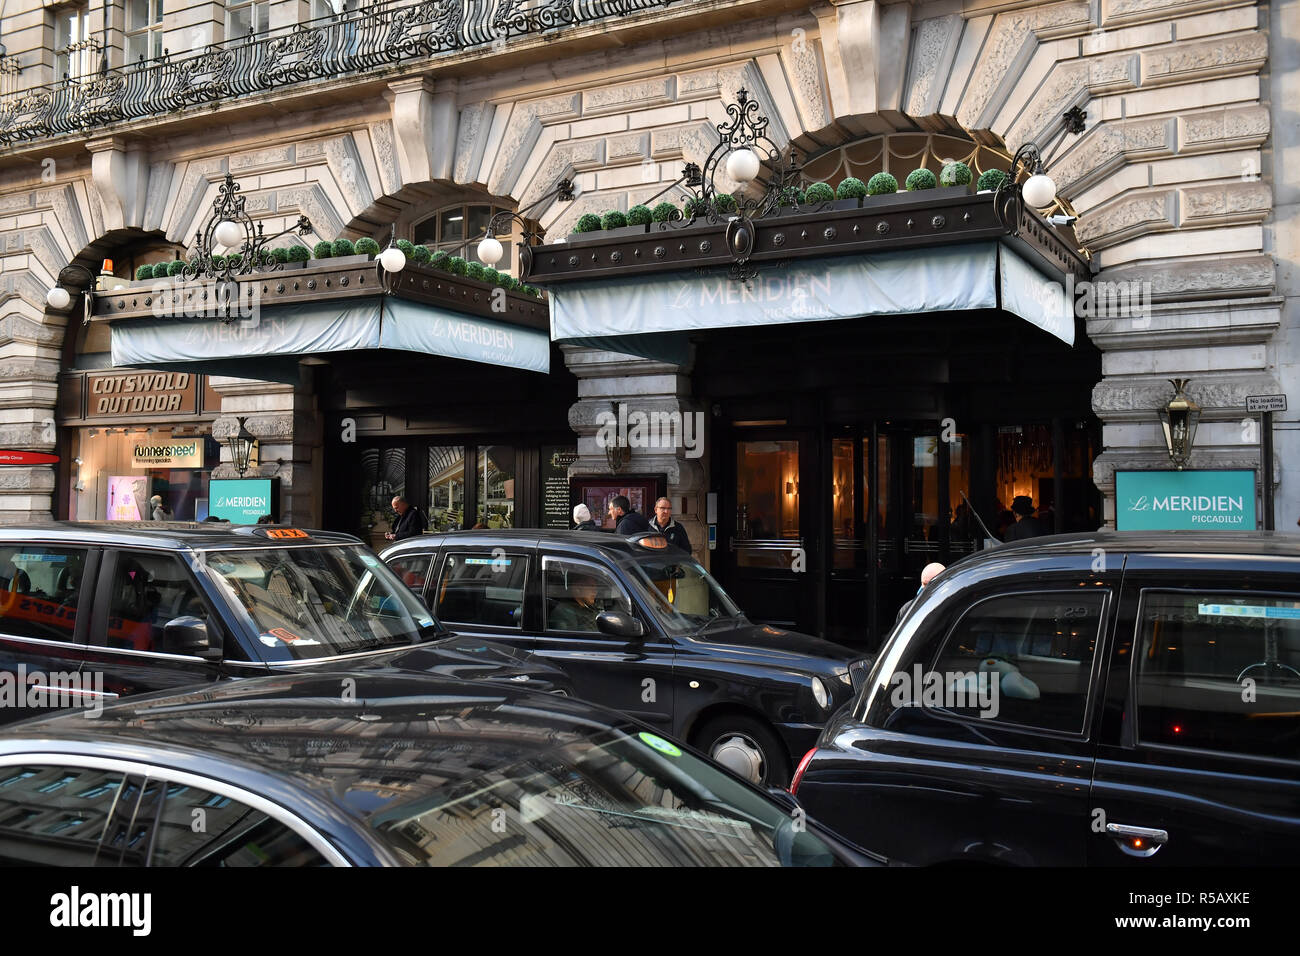 Hotel Le Meridien Piccadilly a Londra, a Marriott hotel Starwood. Marriott ha annunciato 500 milioni di ospiti' i dati potrebbero essere stati esposti durante le violazioni che iniziò nel 2014 dalla proprietà Starwood prenotazione guest database, che include il lusso di Londra. Foto Stock